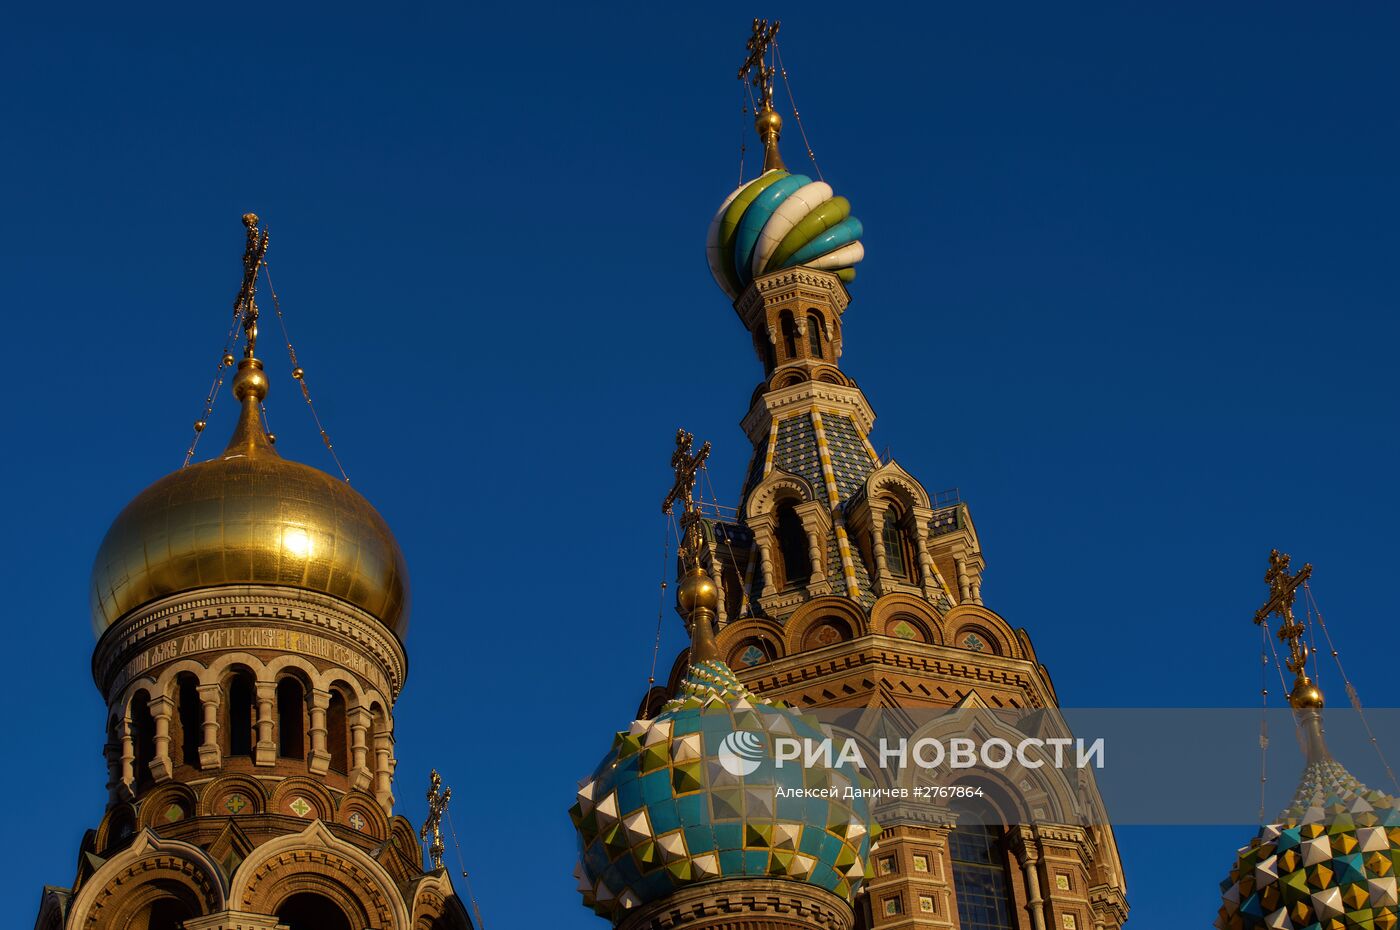 Собор Воскресения Христова в Санкт-Петербурге вошел в список самых красивых храмов мира